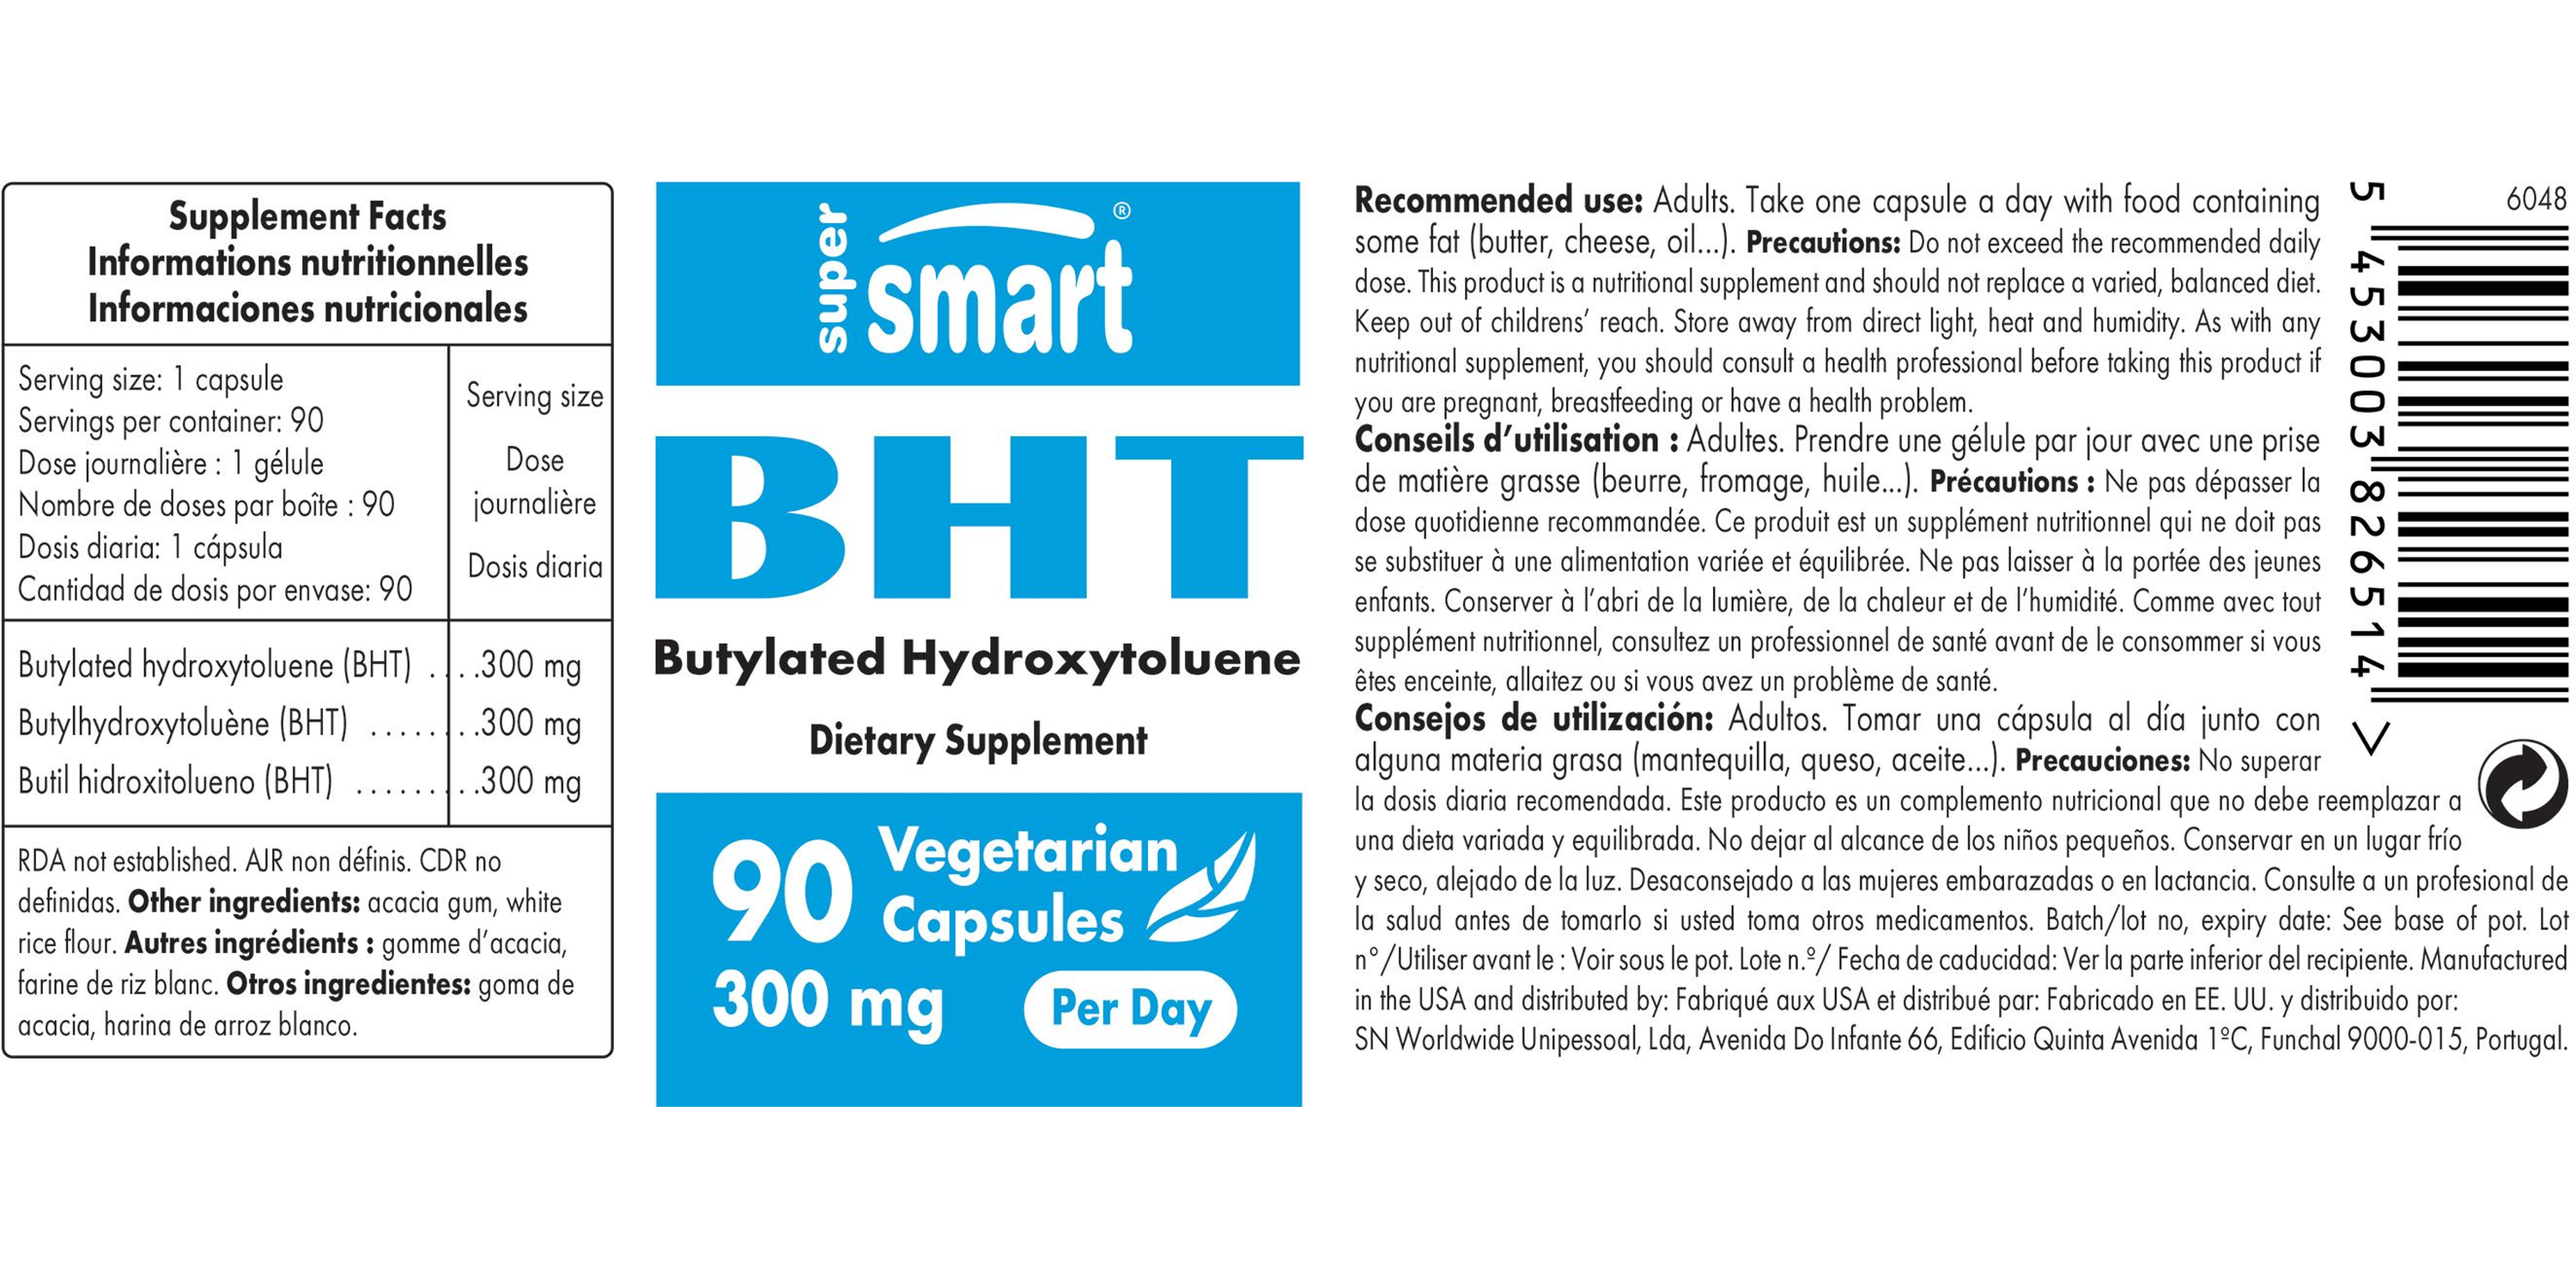 BHT Supplement